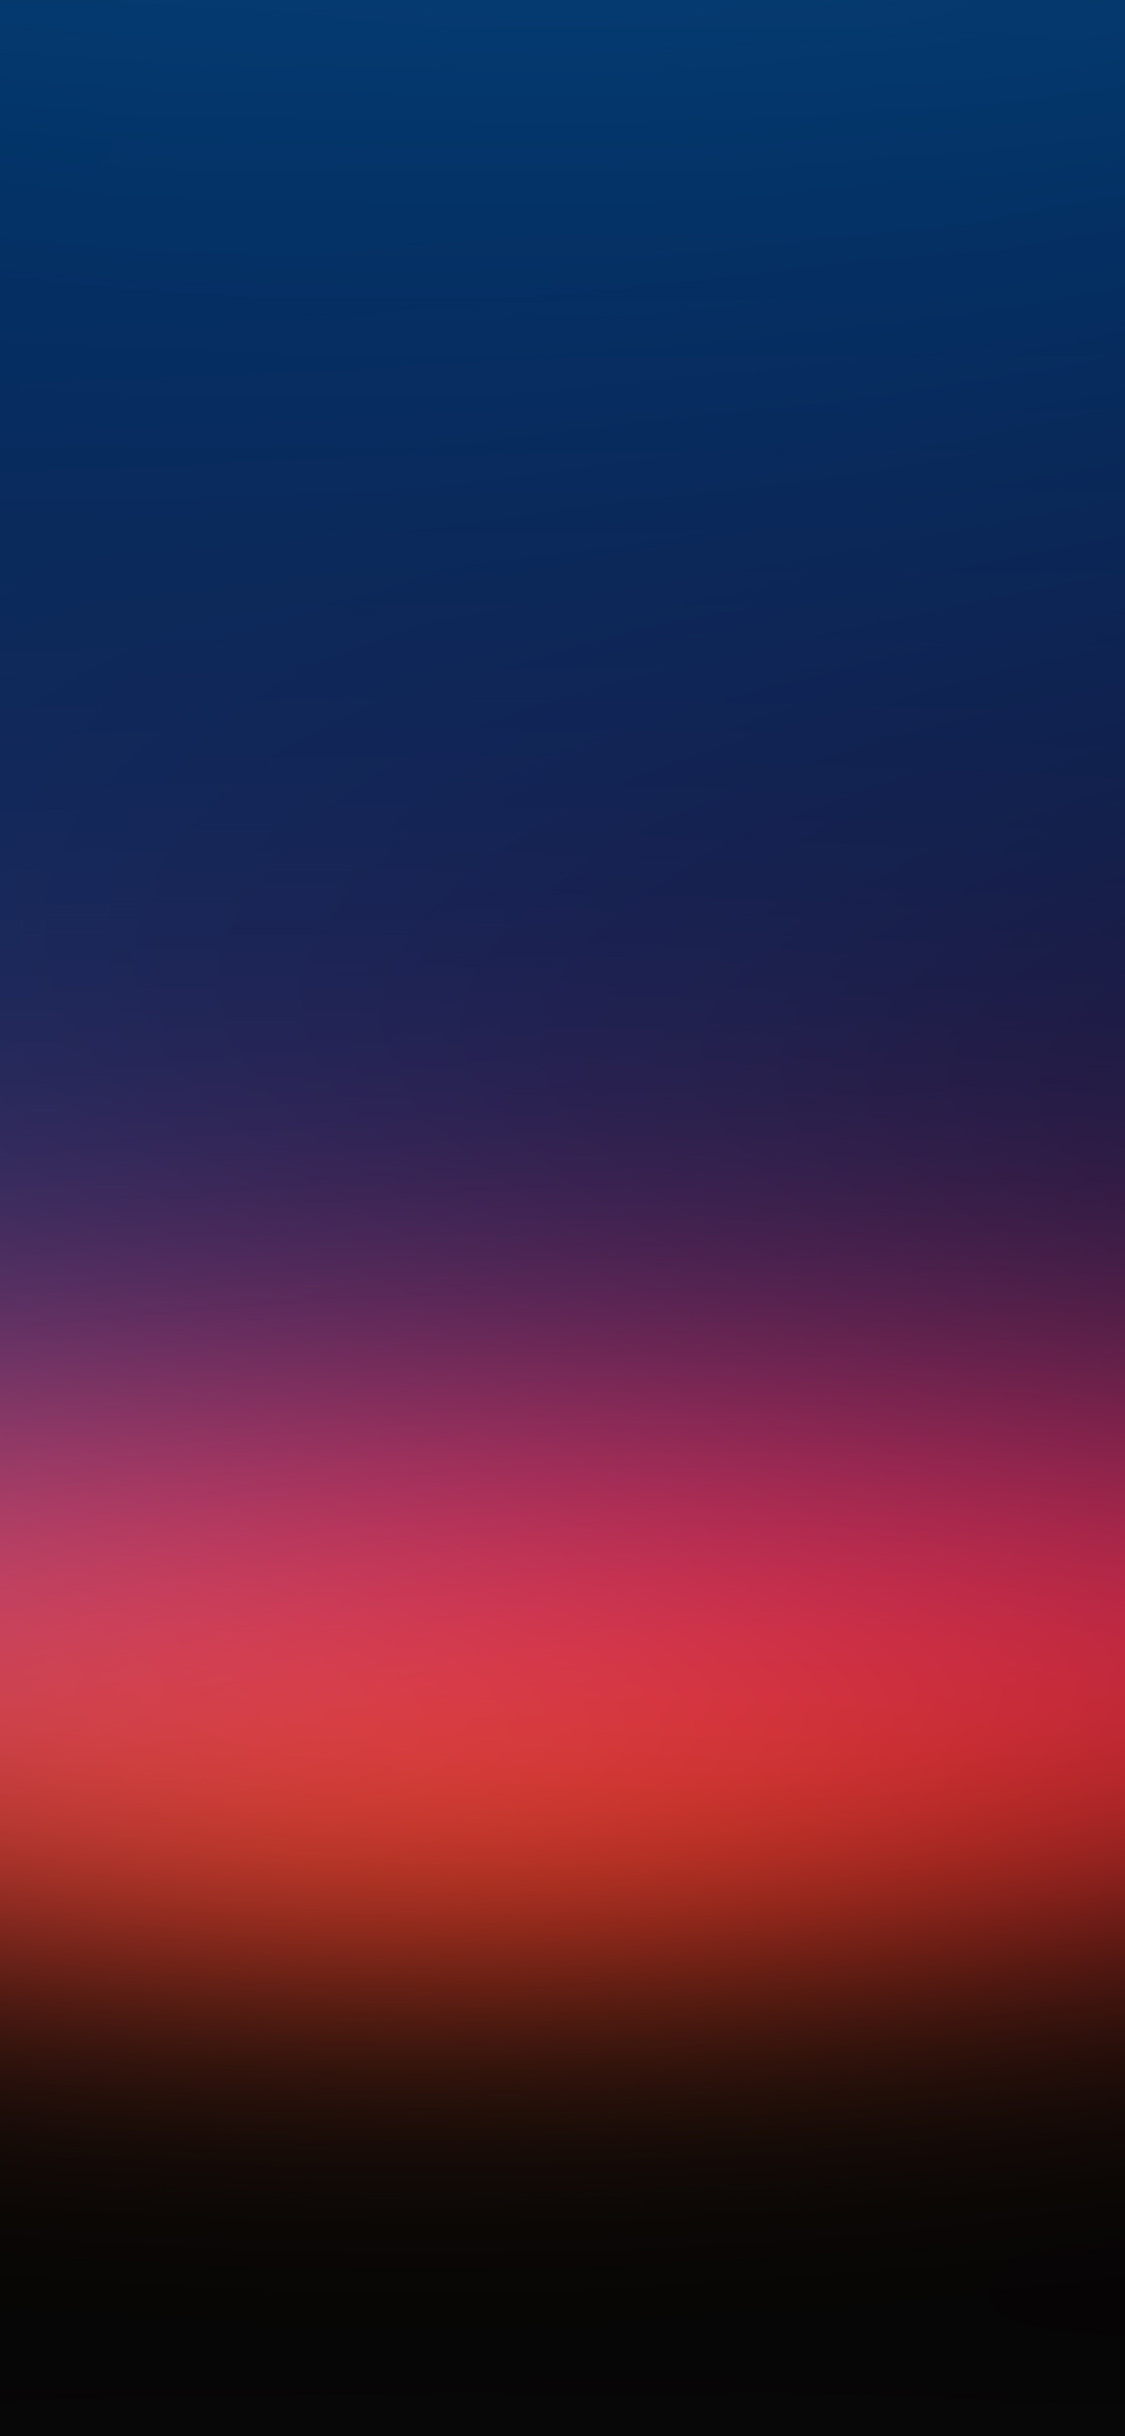 iPhone X wallpaper. morning light red blue blur gradation